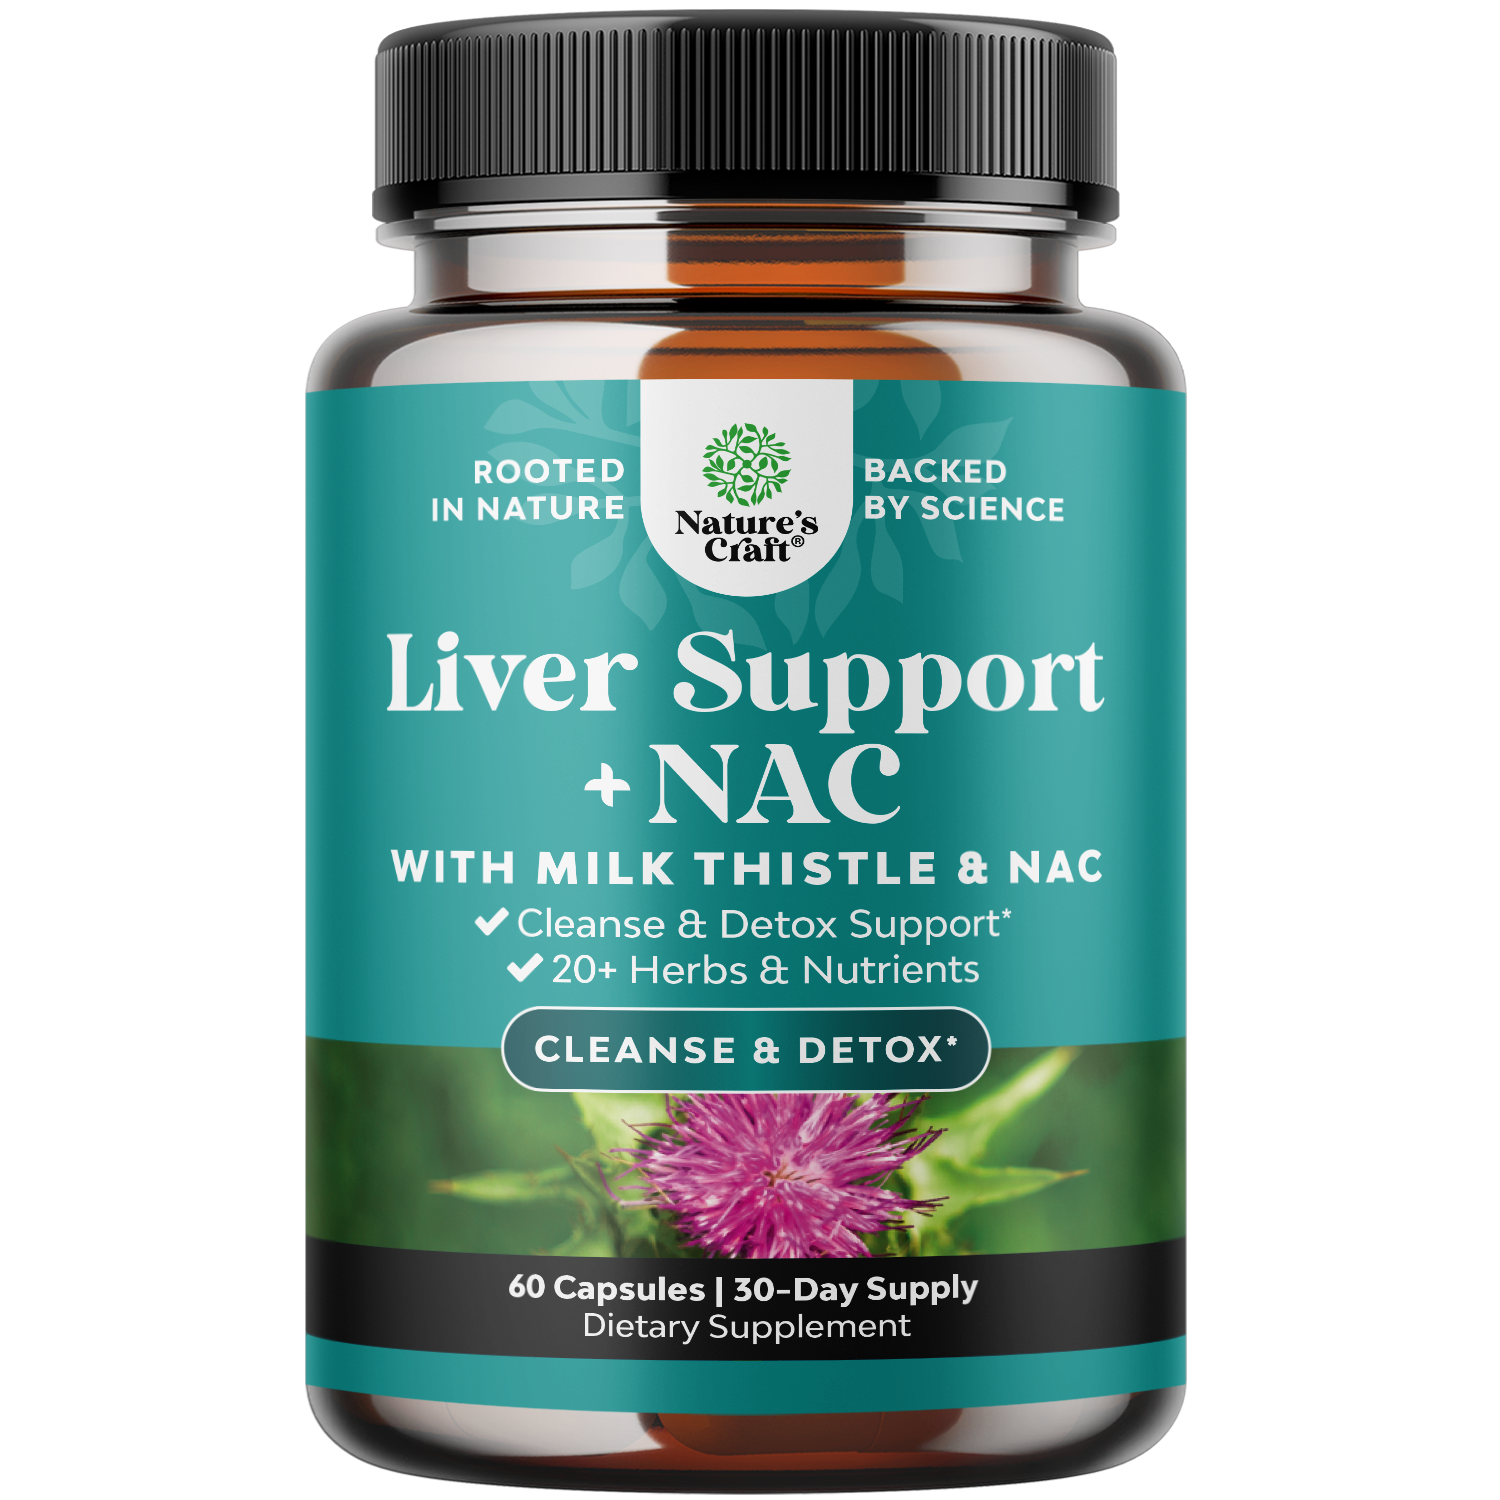 Liver Support + NAC